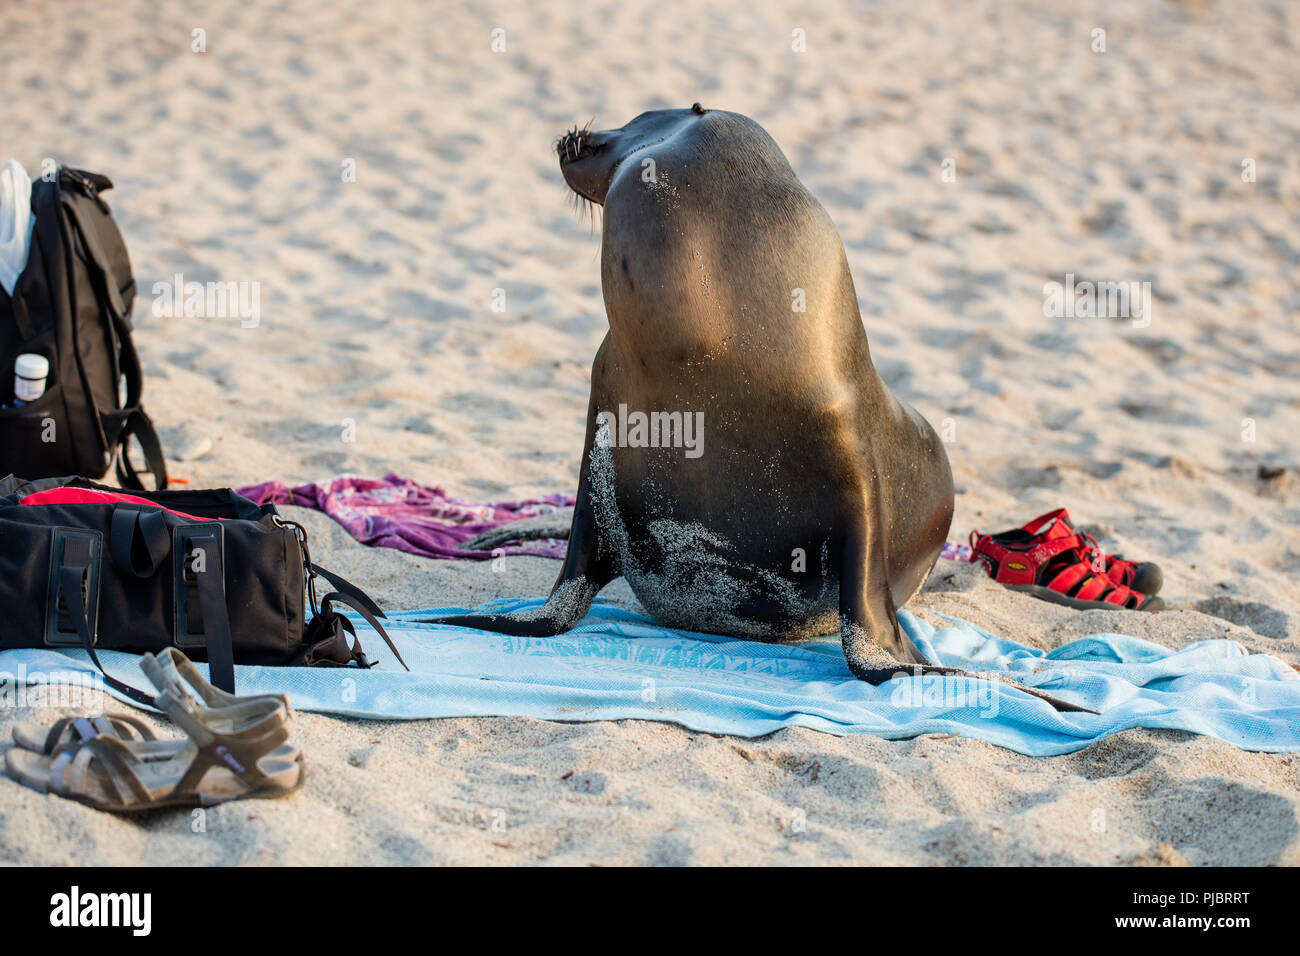 Curieux et préparé le Lion de mer Galapagos profiter d'une journée à la plage remplie de beach blanket, sandales, sac à dos Banque D'Images